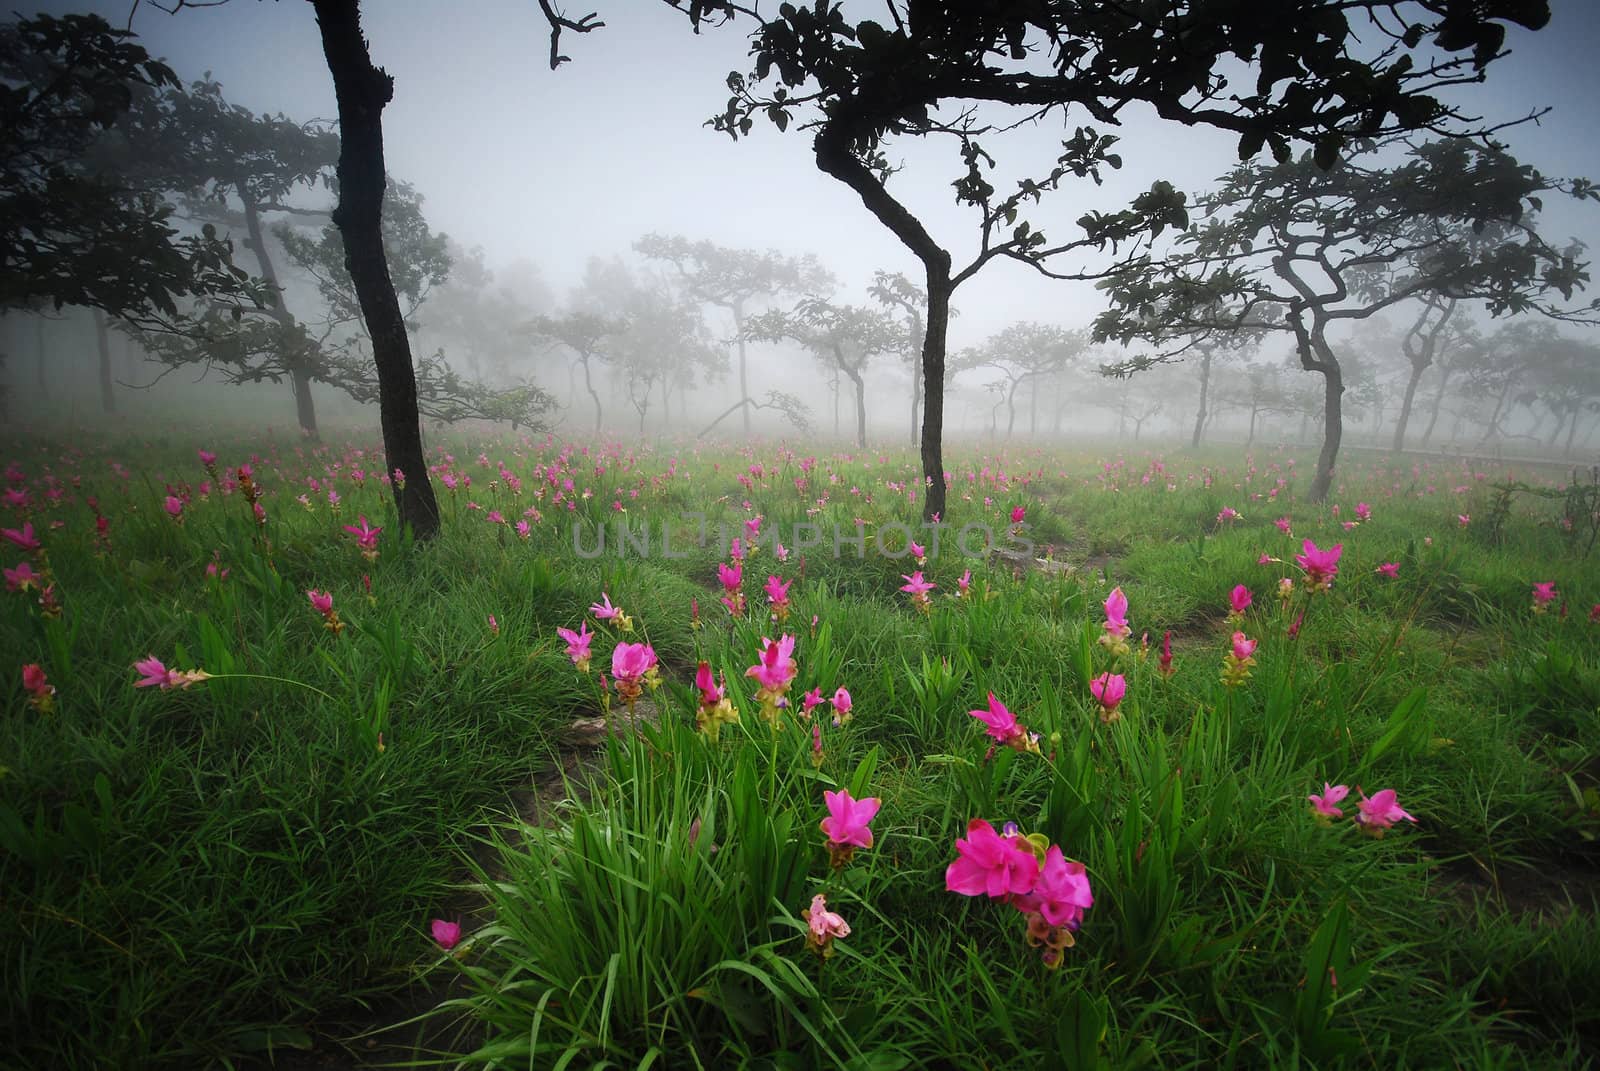 flower field in fog by porbital